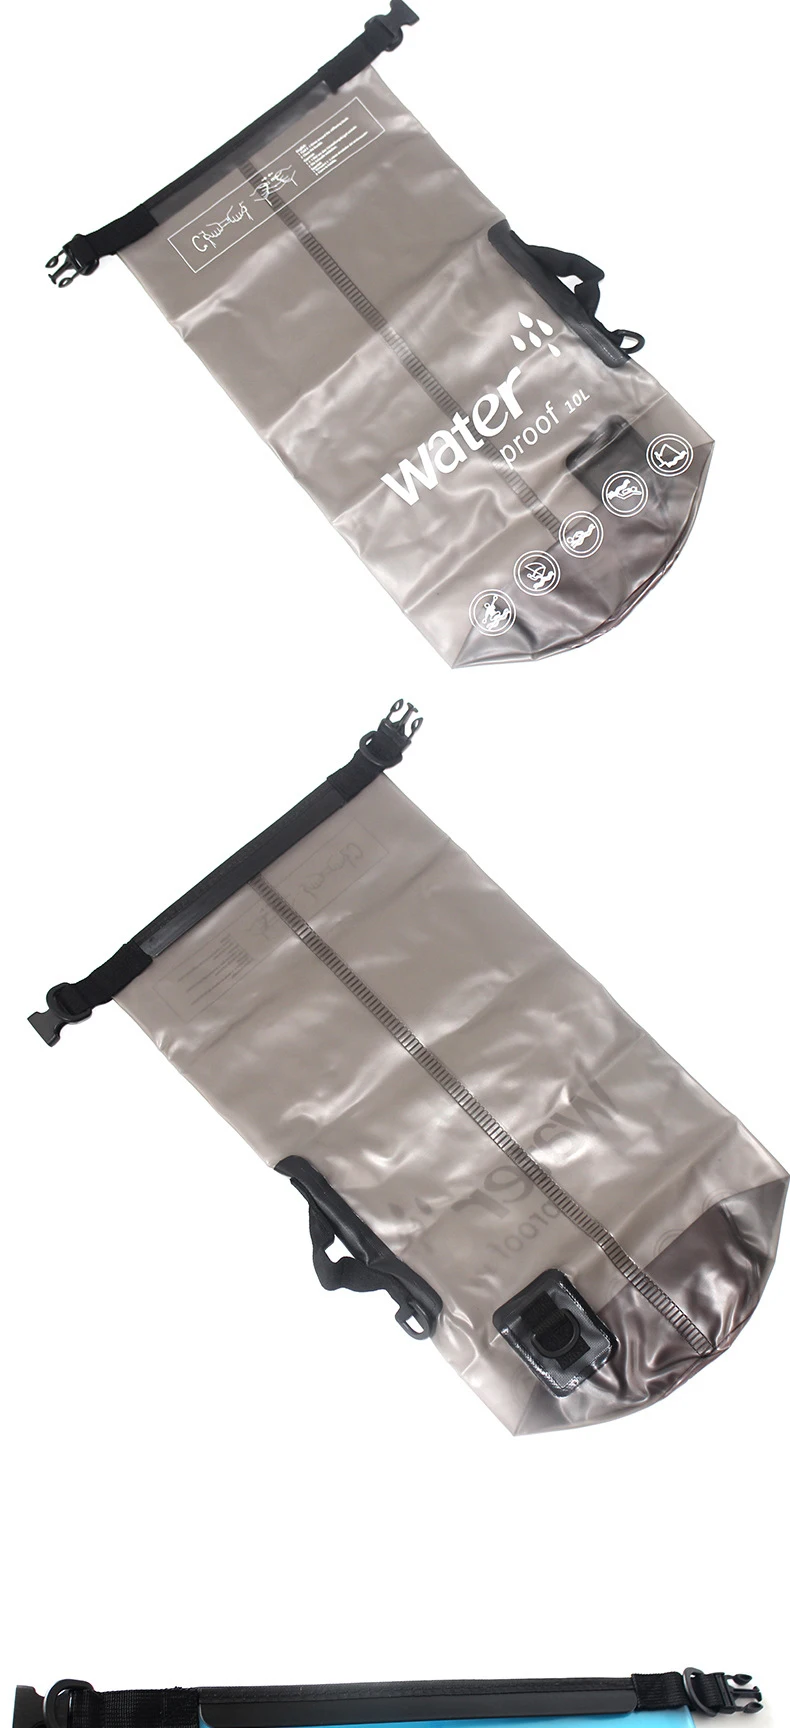 10L 20L Водонепроницаемый Drift Дайвинг Плавательный мешок остающийся сухим под водой плечо поясная карманная сумка ПВХ Каякинг парусный спорт рюкзак